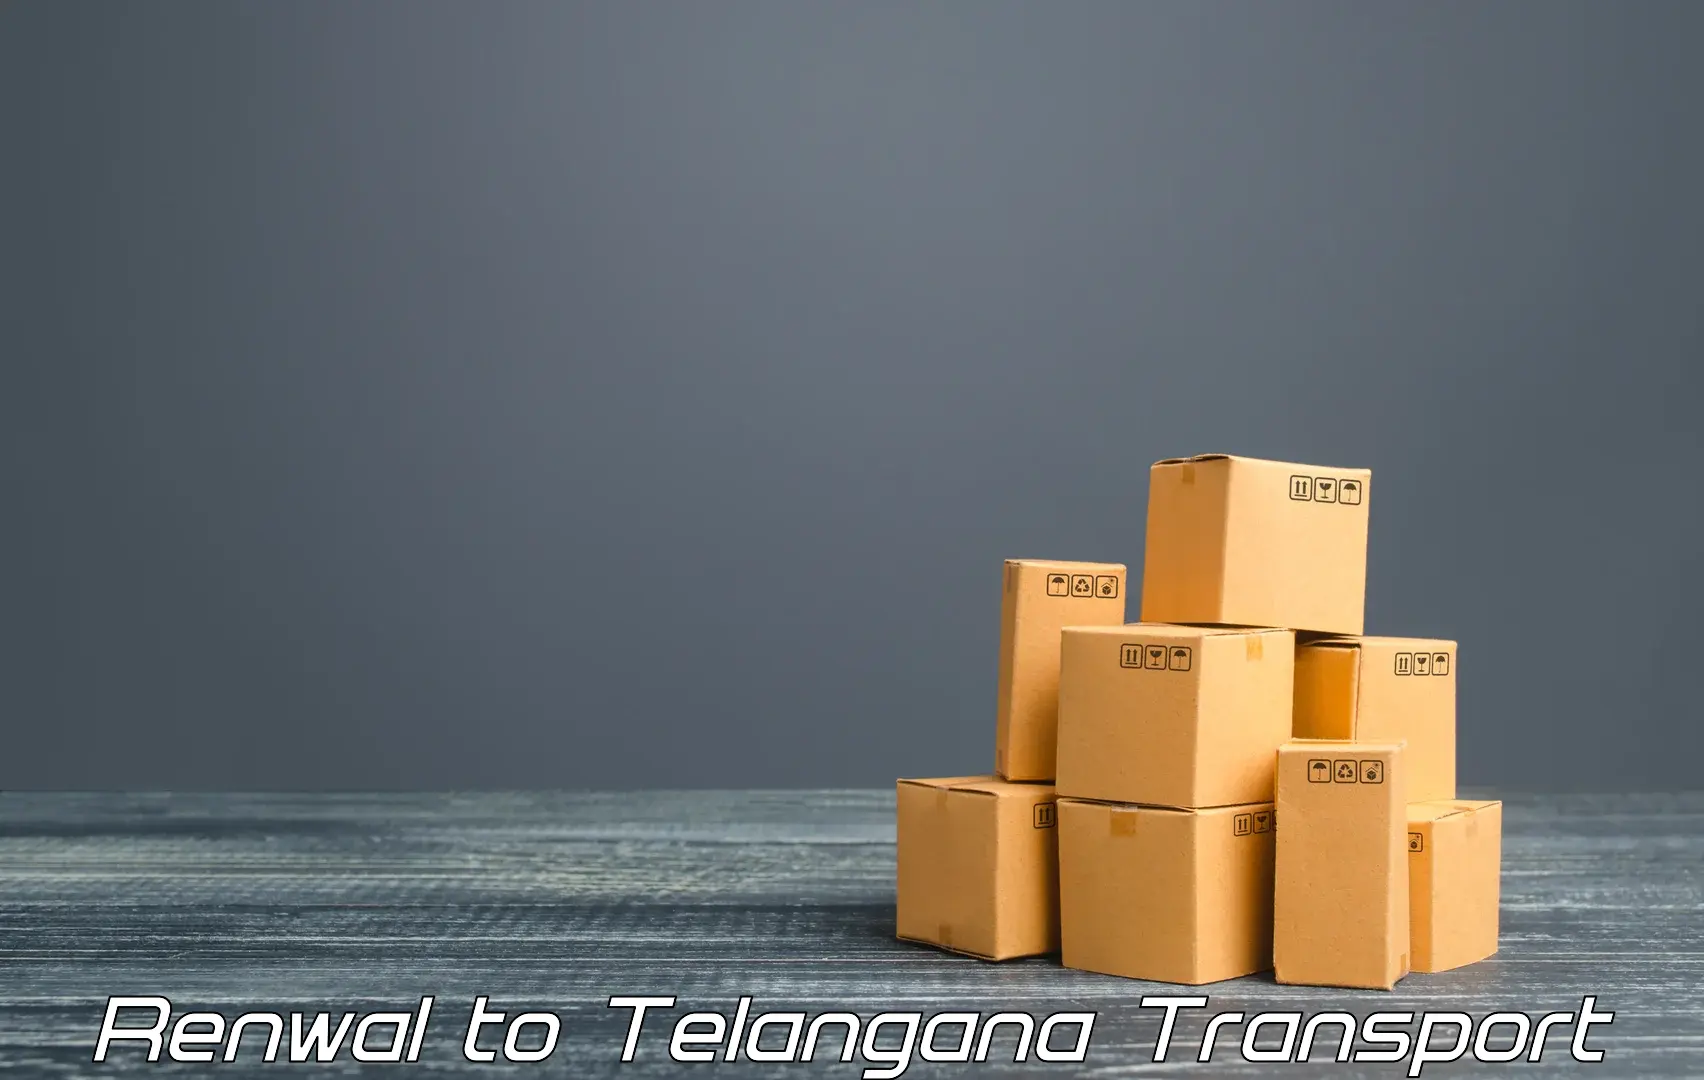 Furniture transport service Renwal to Balanagar